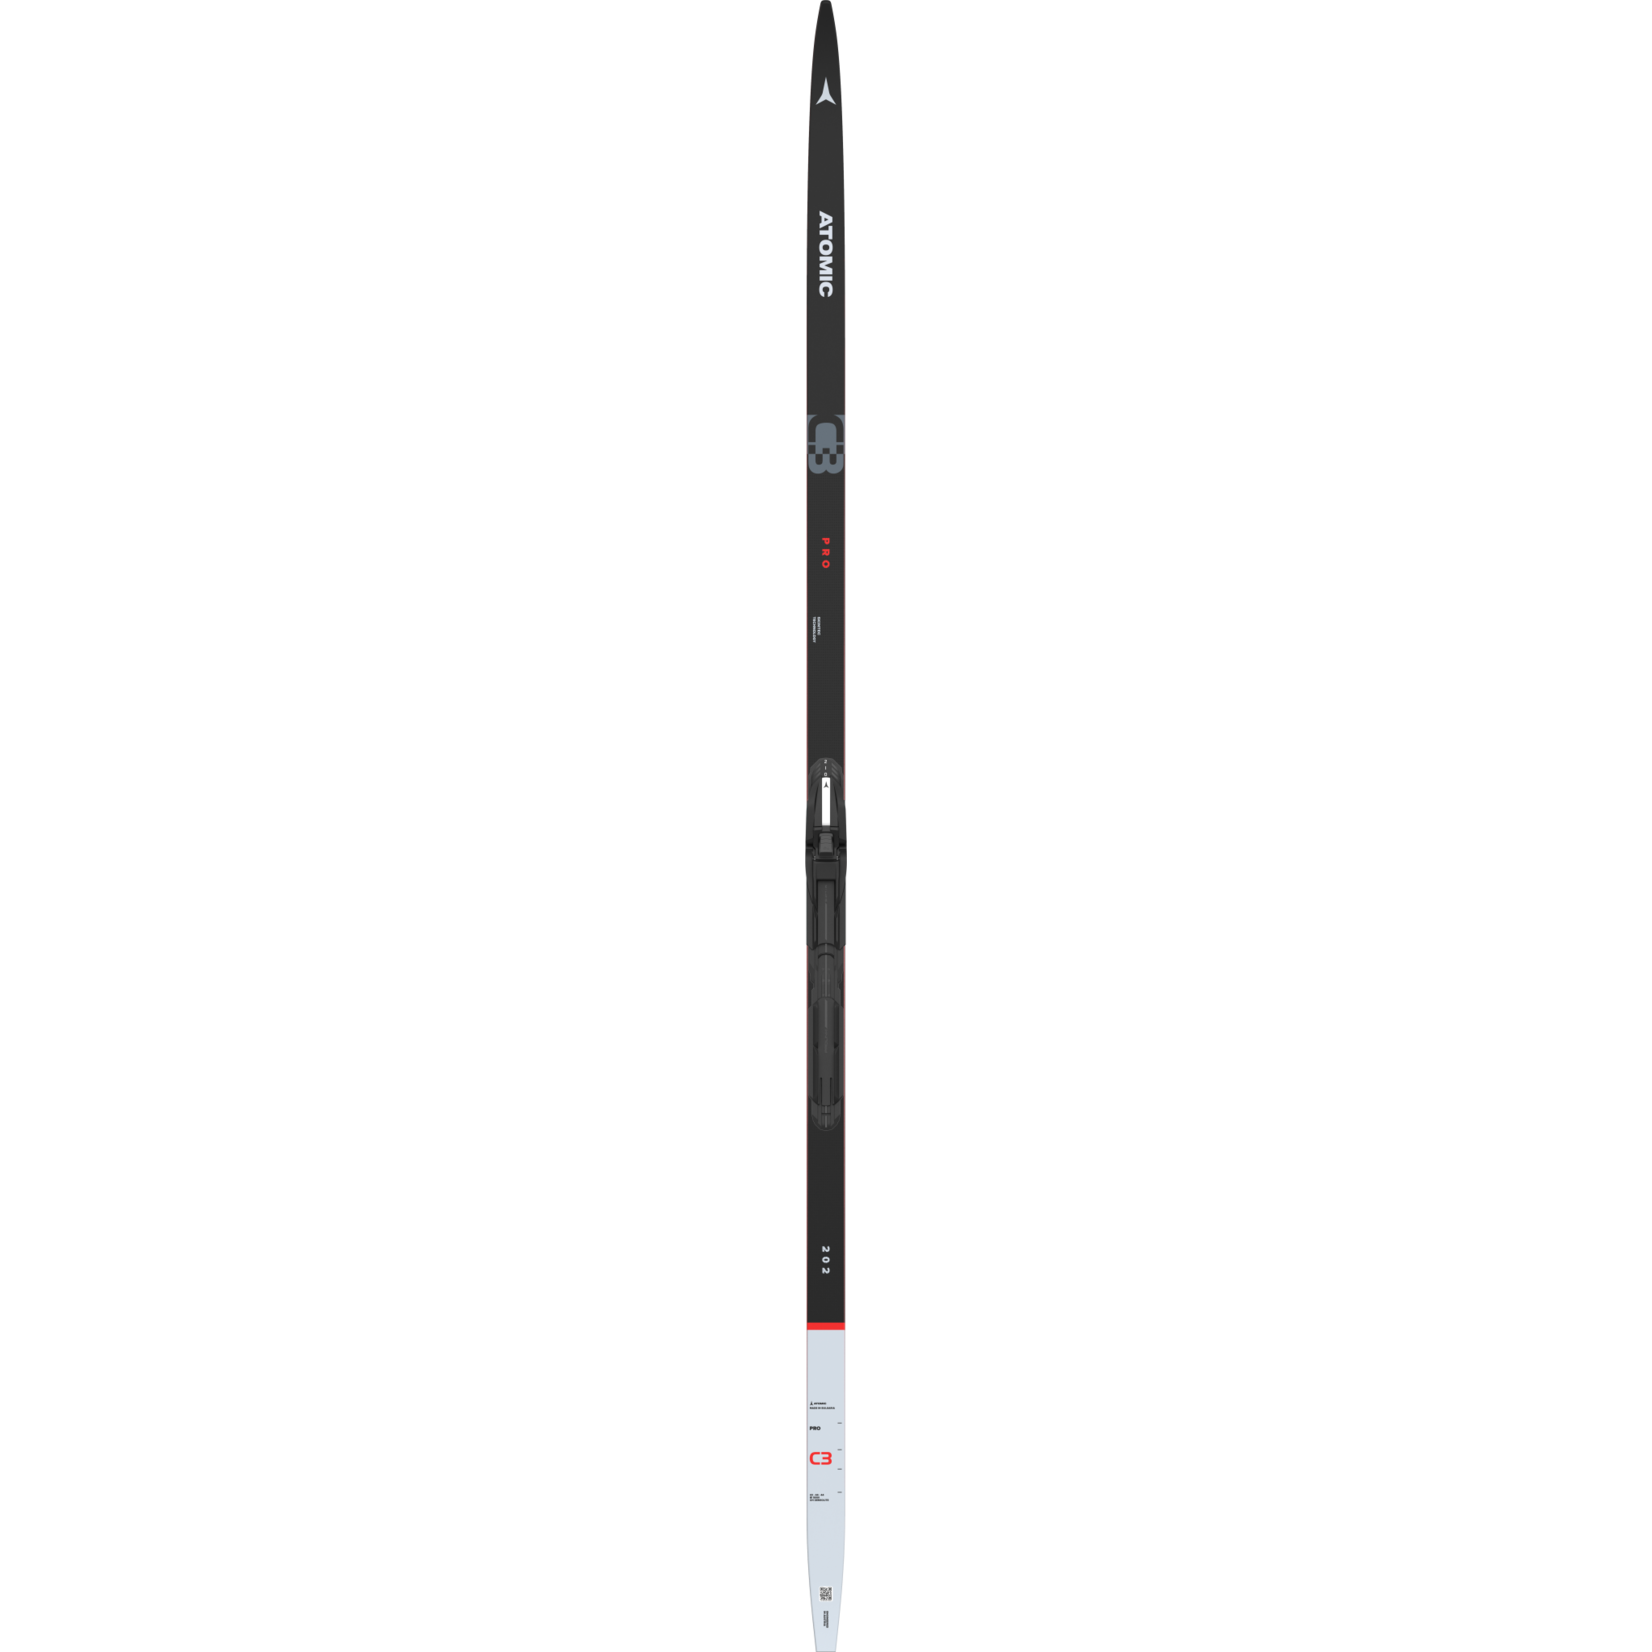 Atomic Pro C3 Skintec (skis de fond classiques avec peaux)